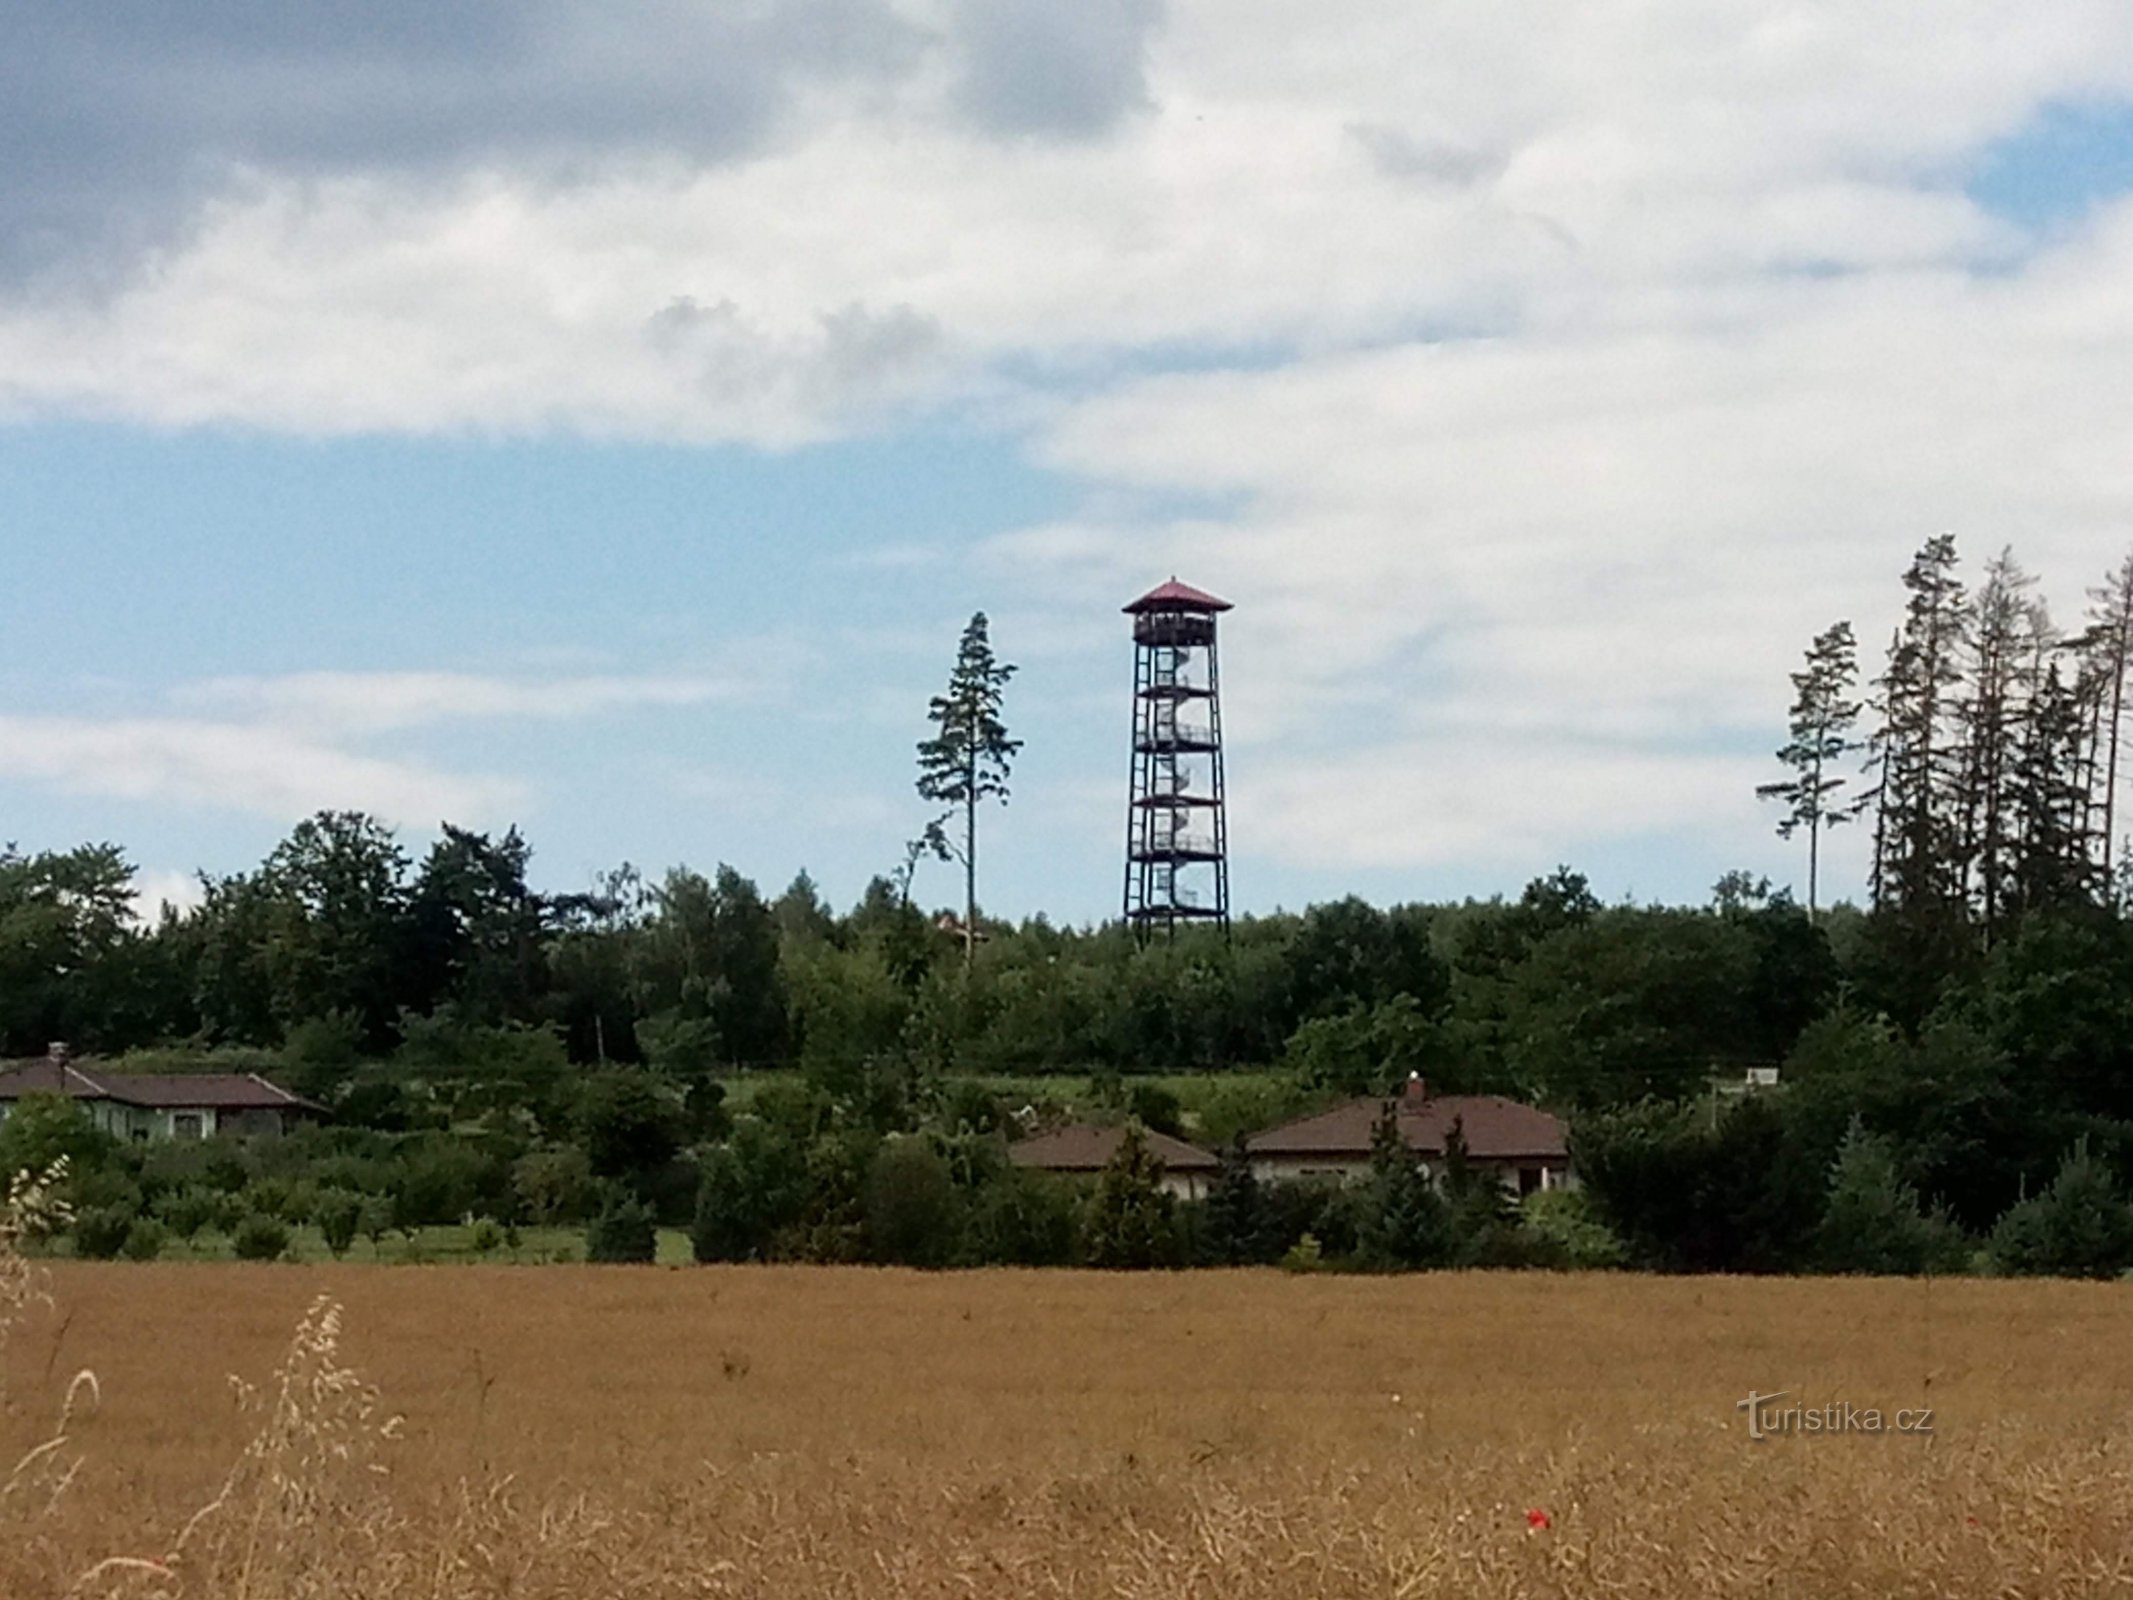 Torre de vigia Babka